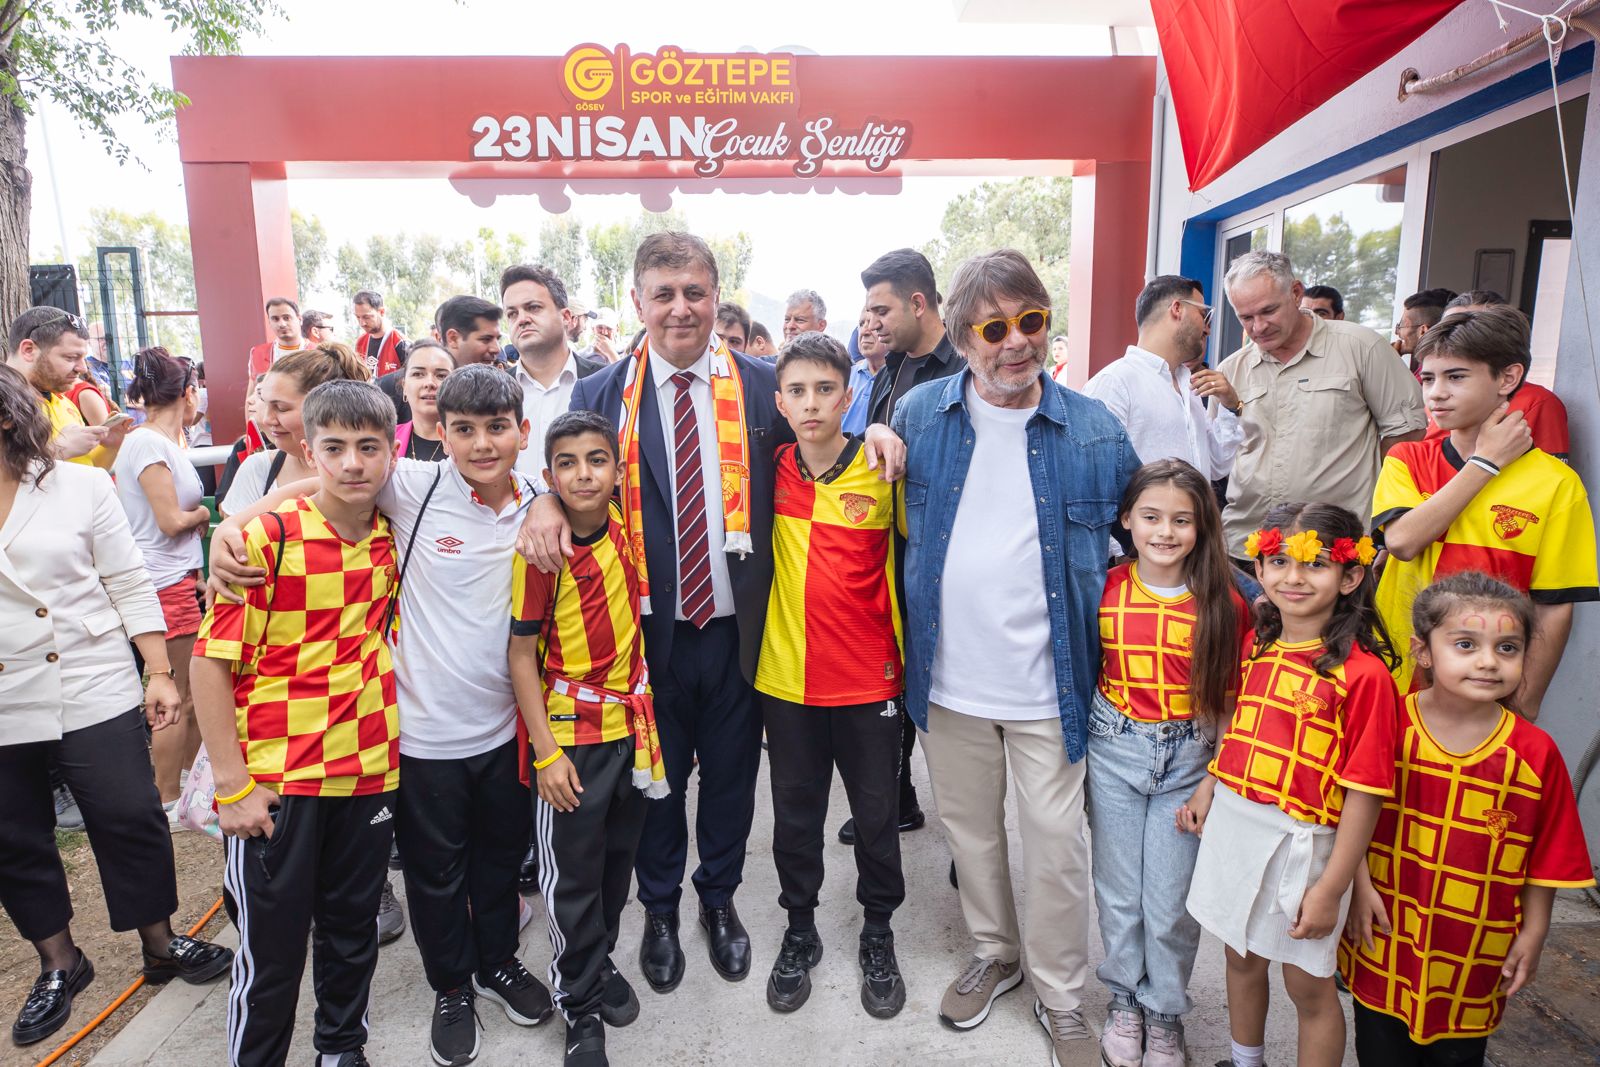 Başkan Tugay: “Bütün İzmir’in belediye başkanıyım”